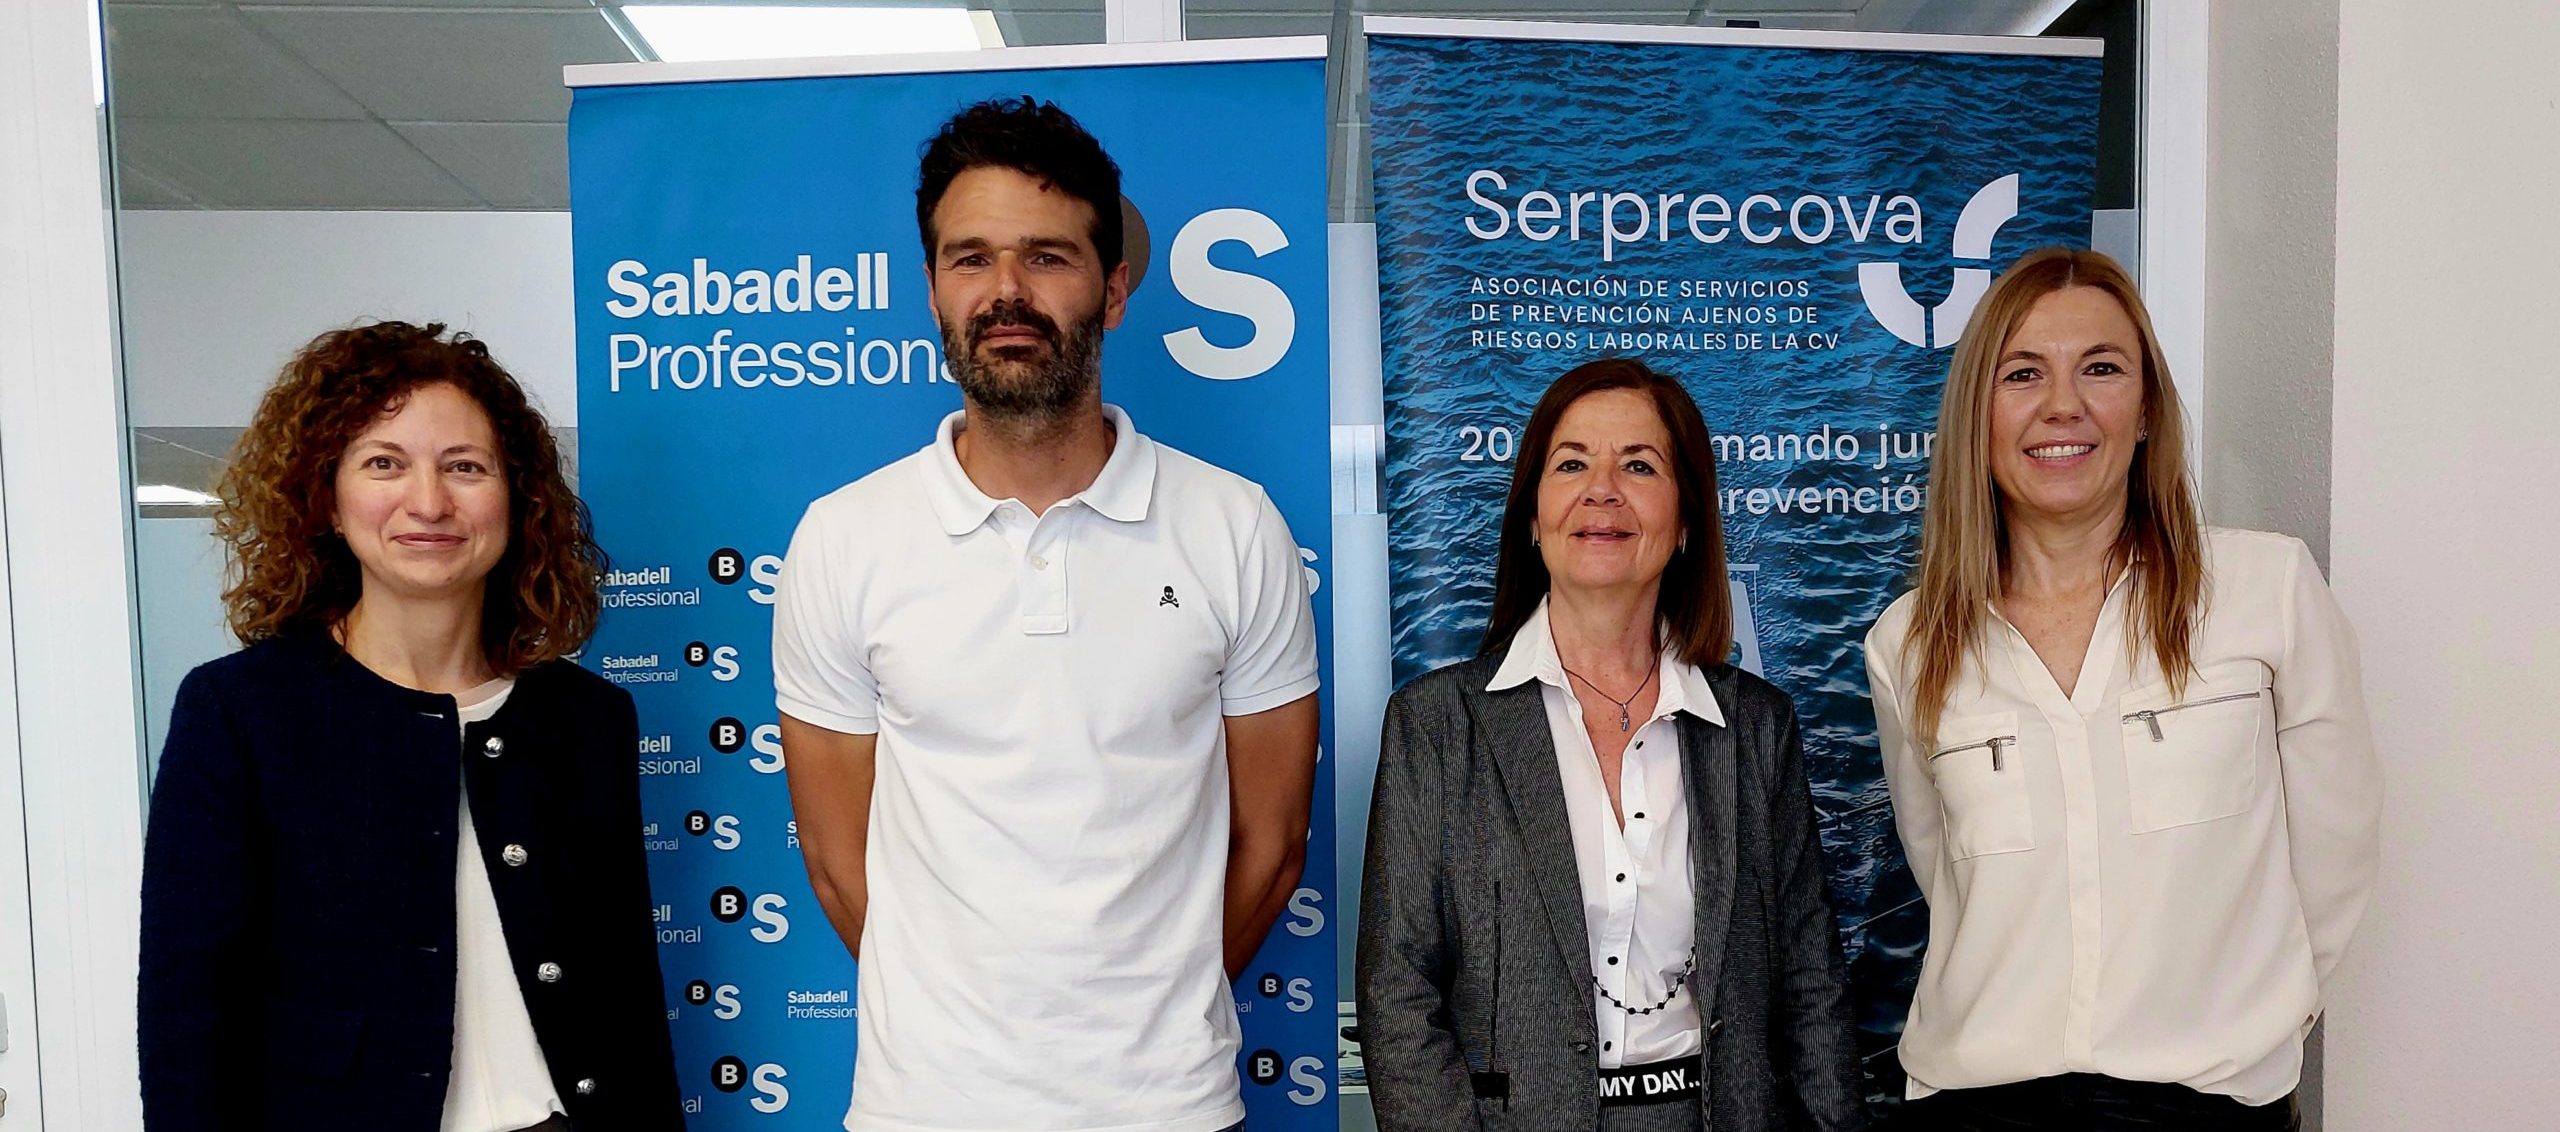 Serprecova y Banco Sabadell ratifican un acuerdo de colaboración de apoyo a su sector empresarial